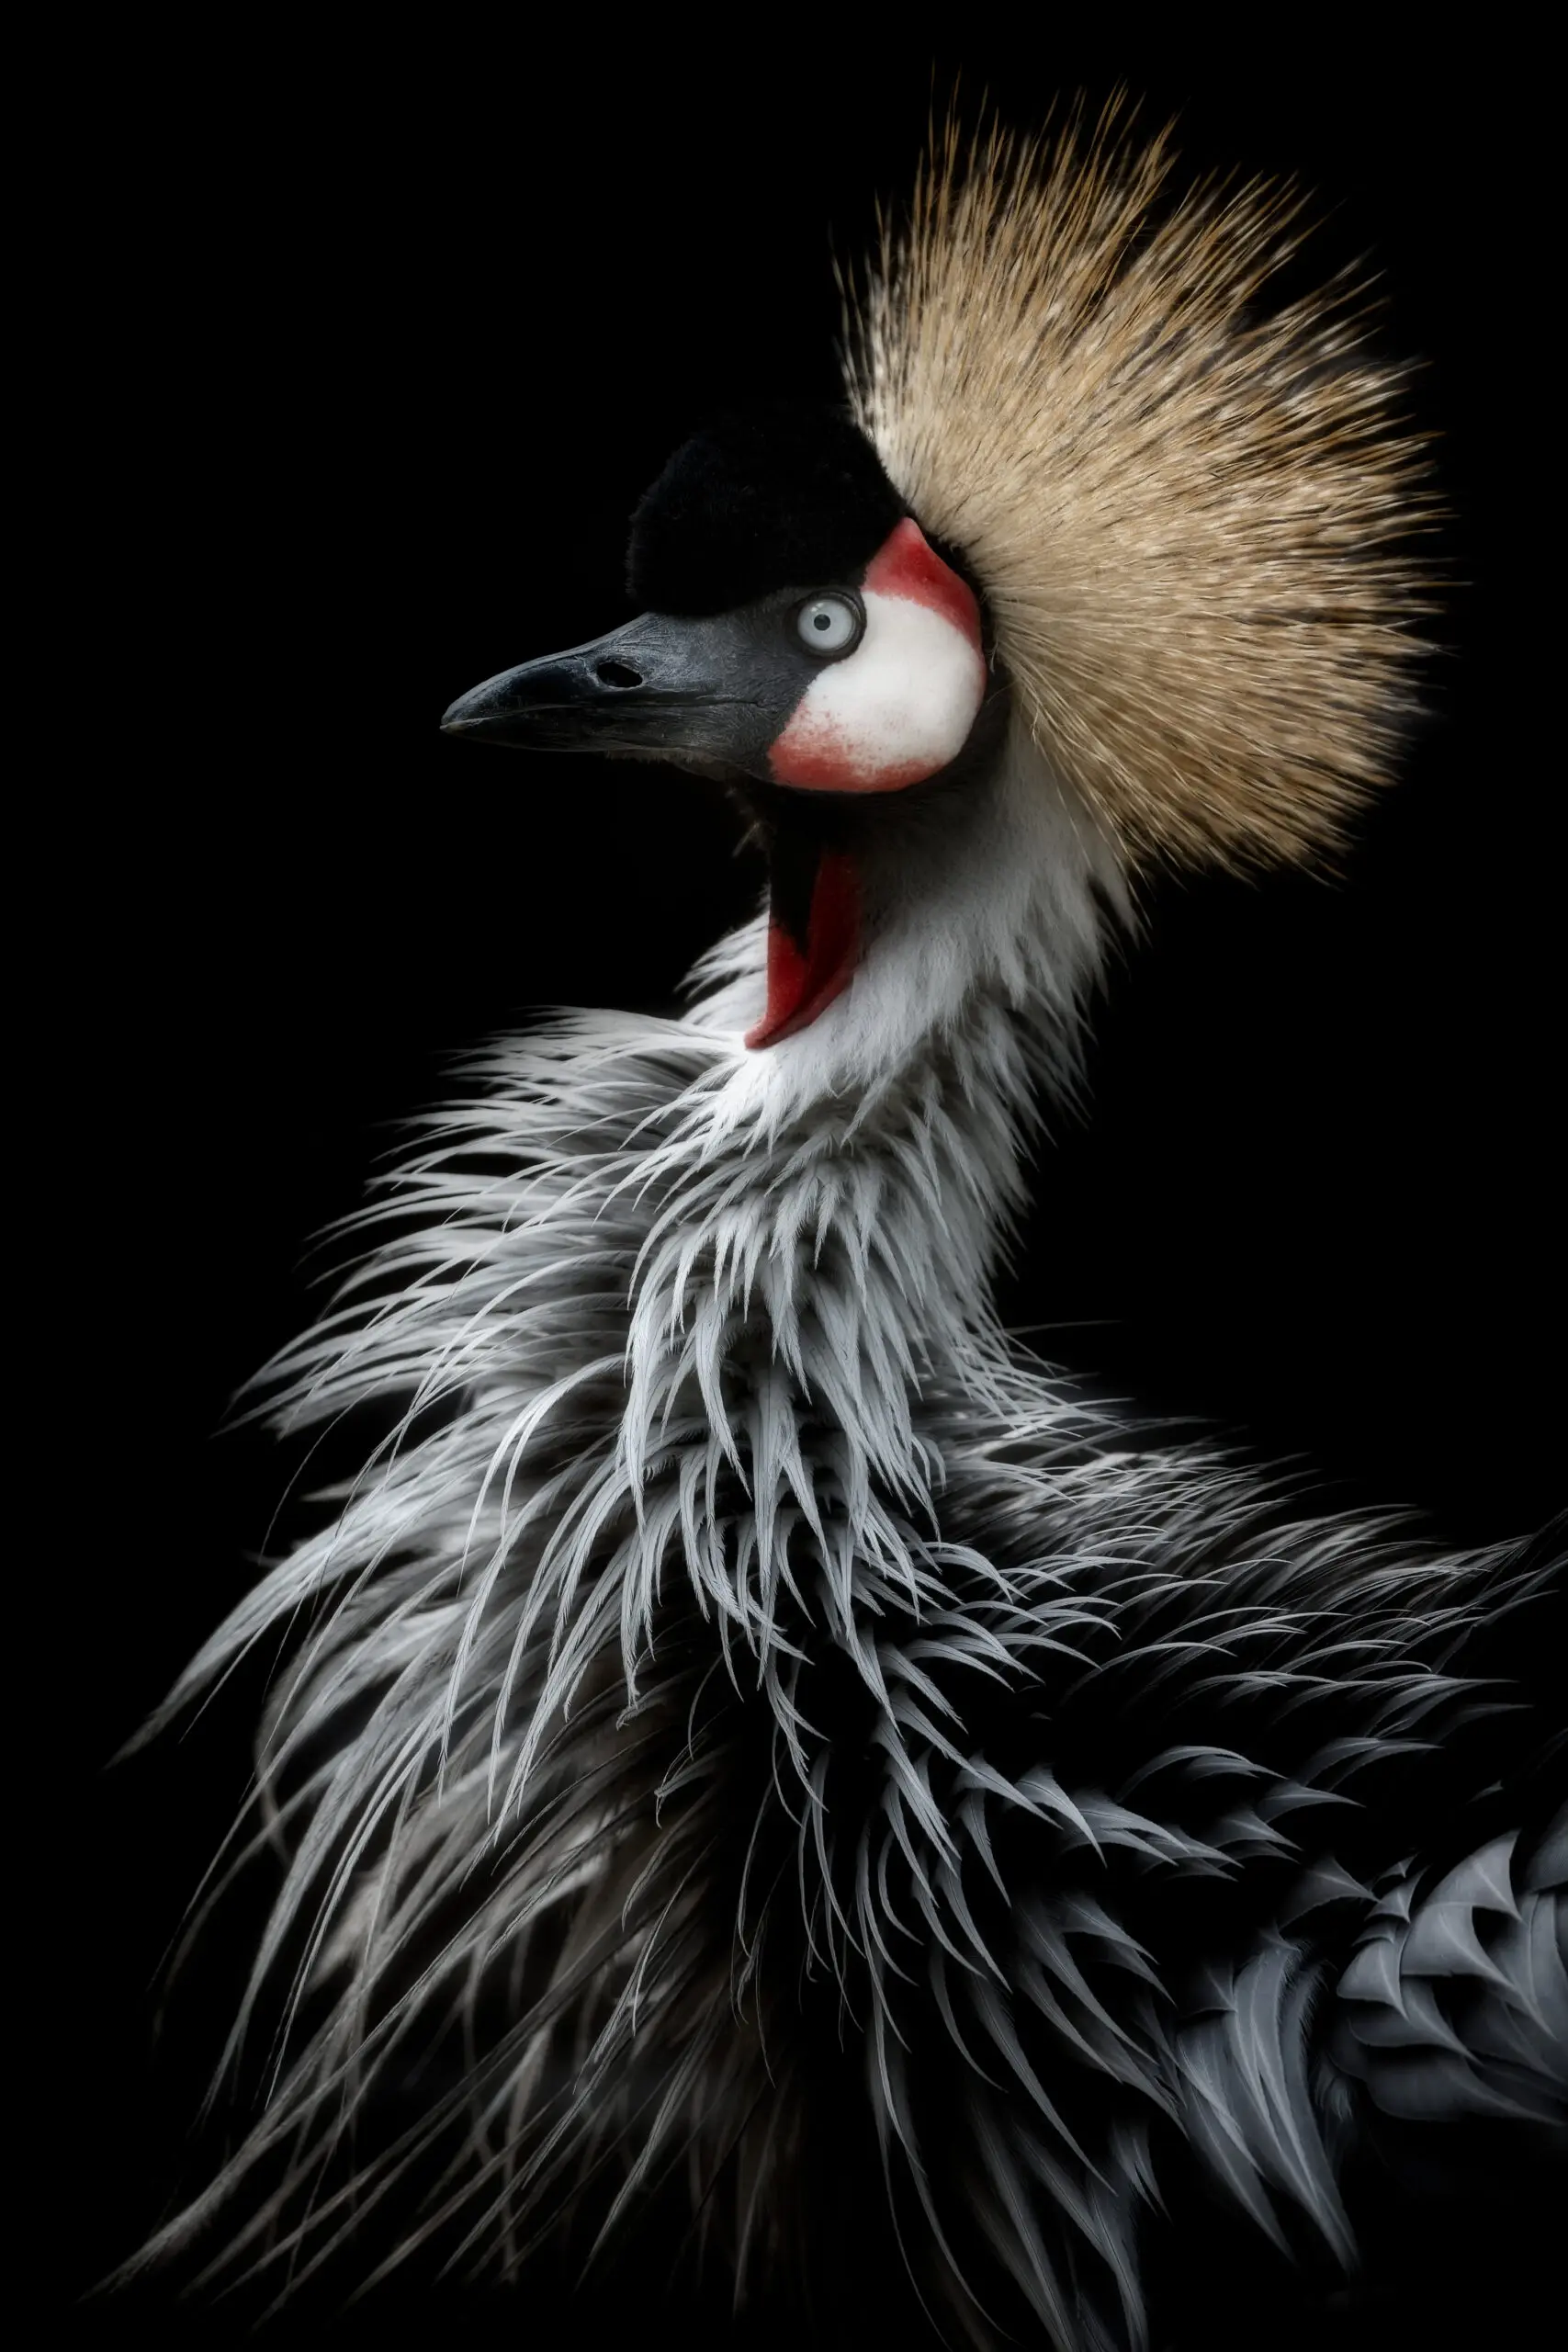 Wandbild (5674) Crowned crane’s portrait	by Eiji Itoyama präsentiert: Tiere,Sonstige Tiere,Vögel